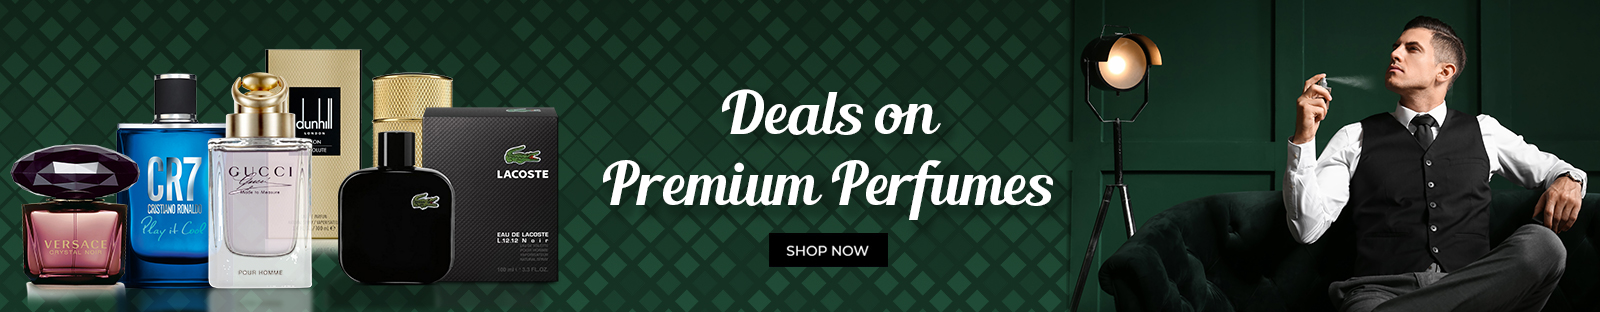 Premium-Perfumes---1600x312.jpg